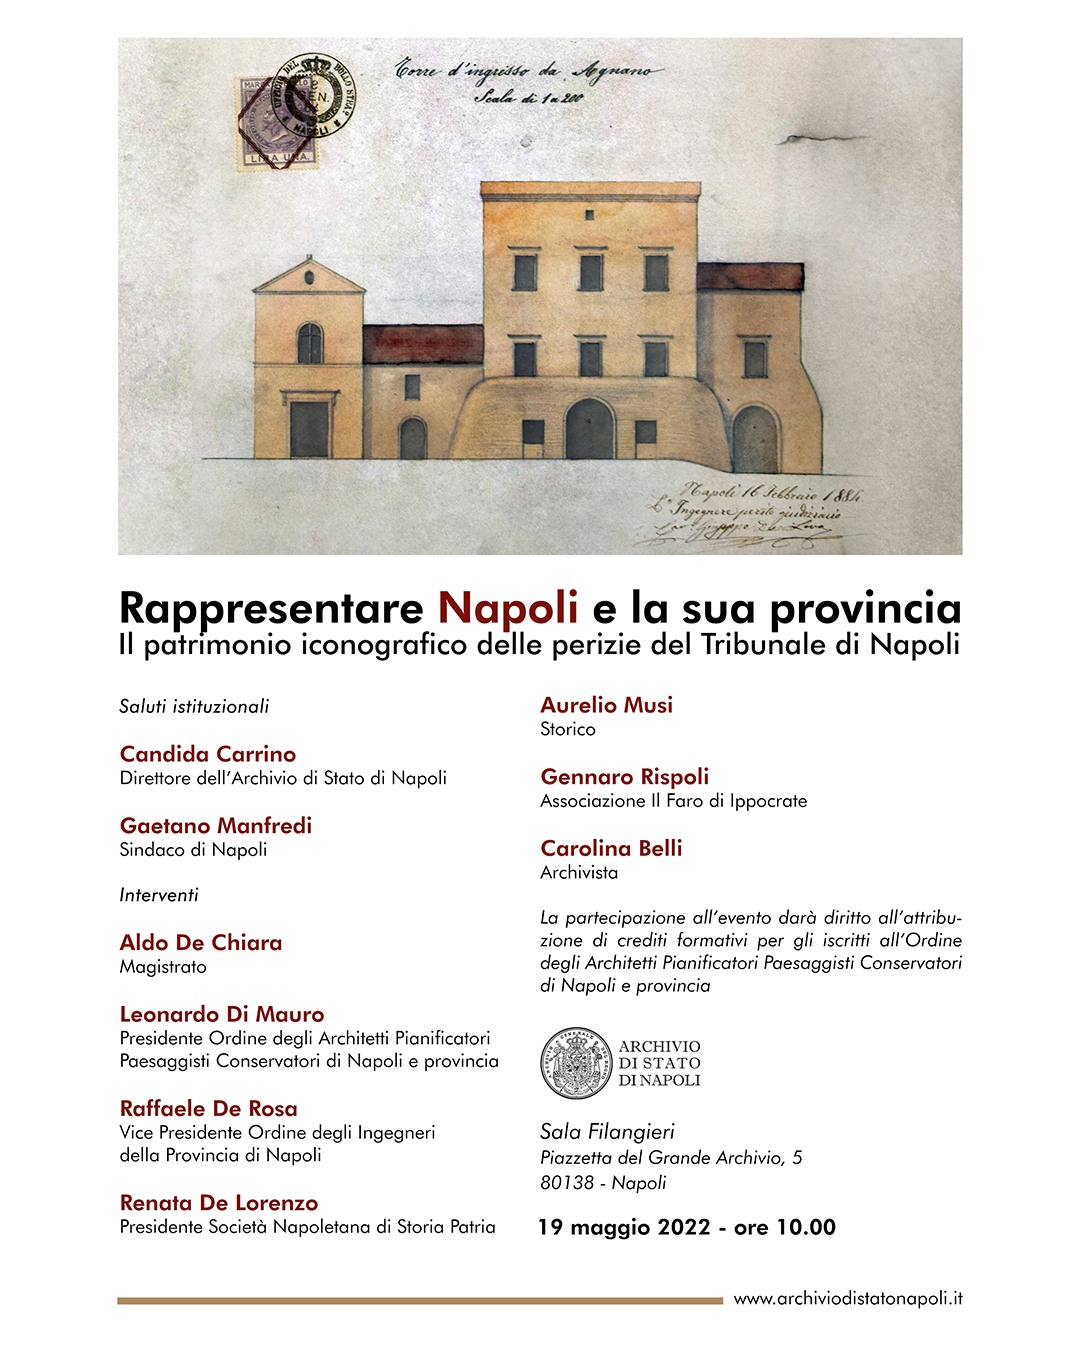 Napoli: Archivio di Stato, presentazione inventario e mostra documentaria “Rappresentare Napoli e la sua provincia, patrimonio iconografico perizie del Tribunale”